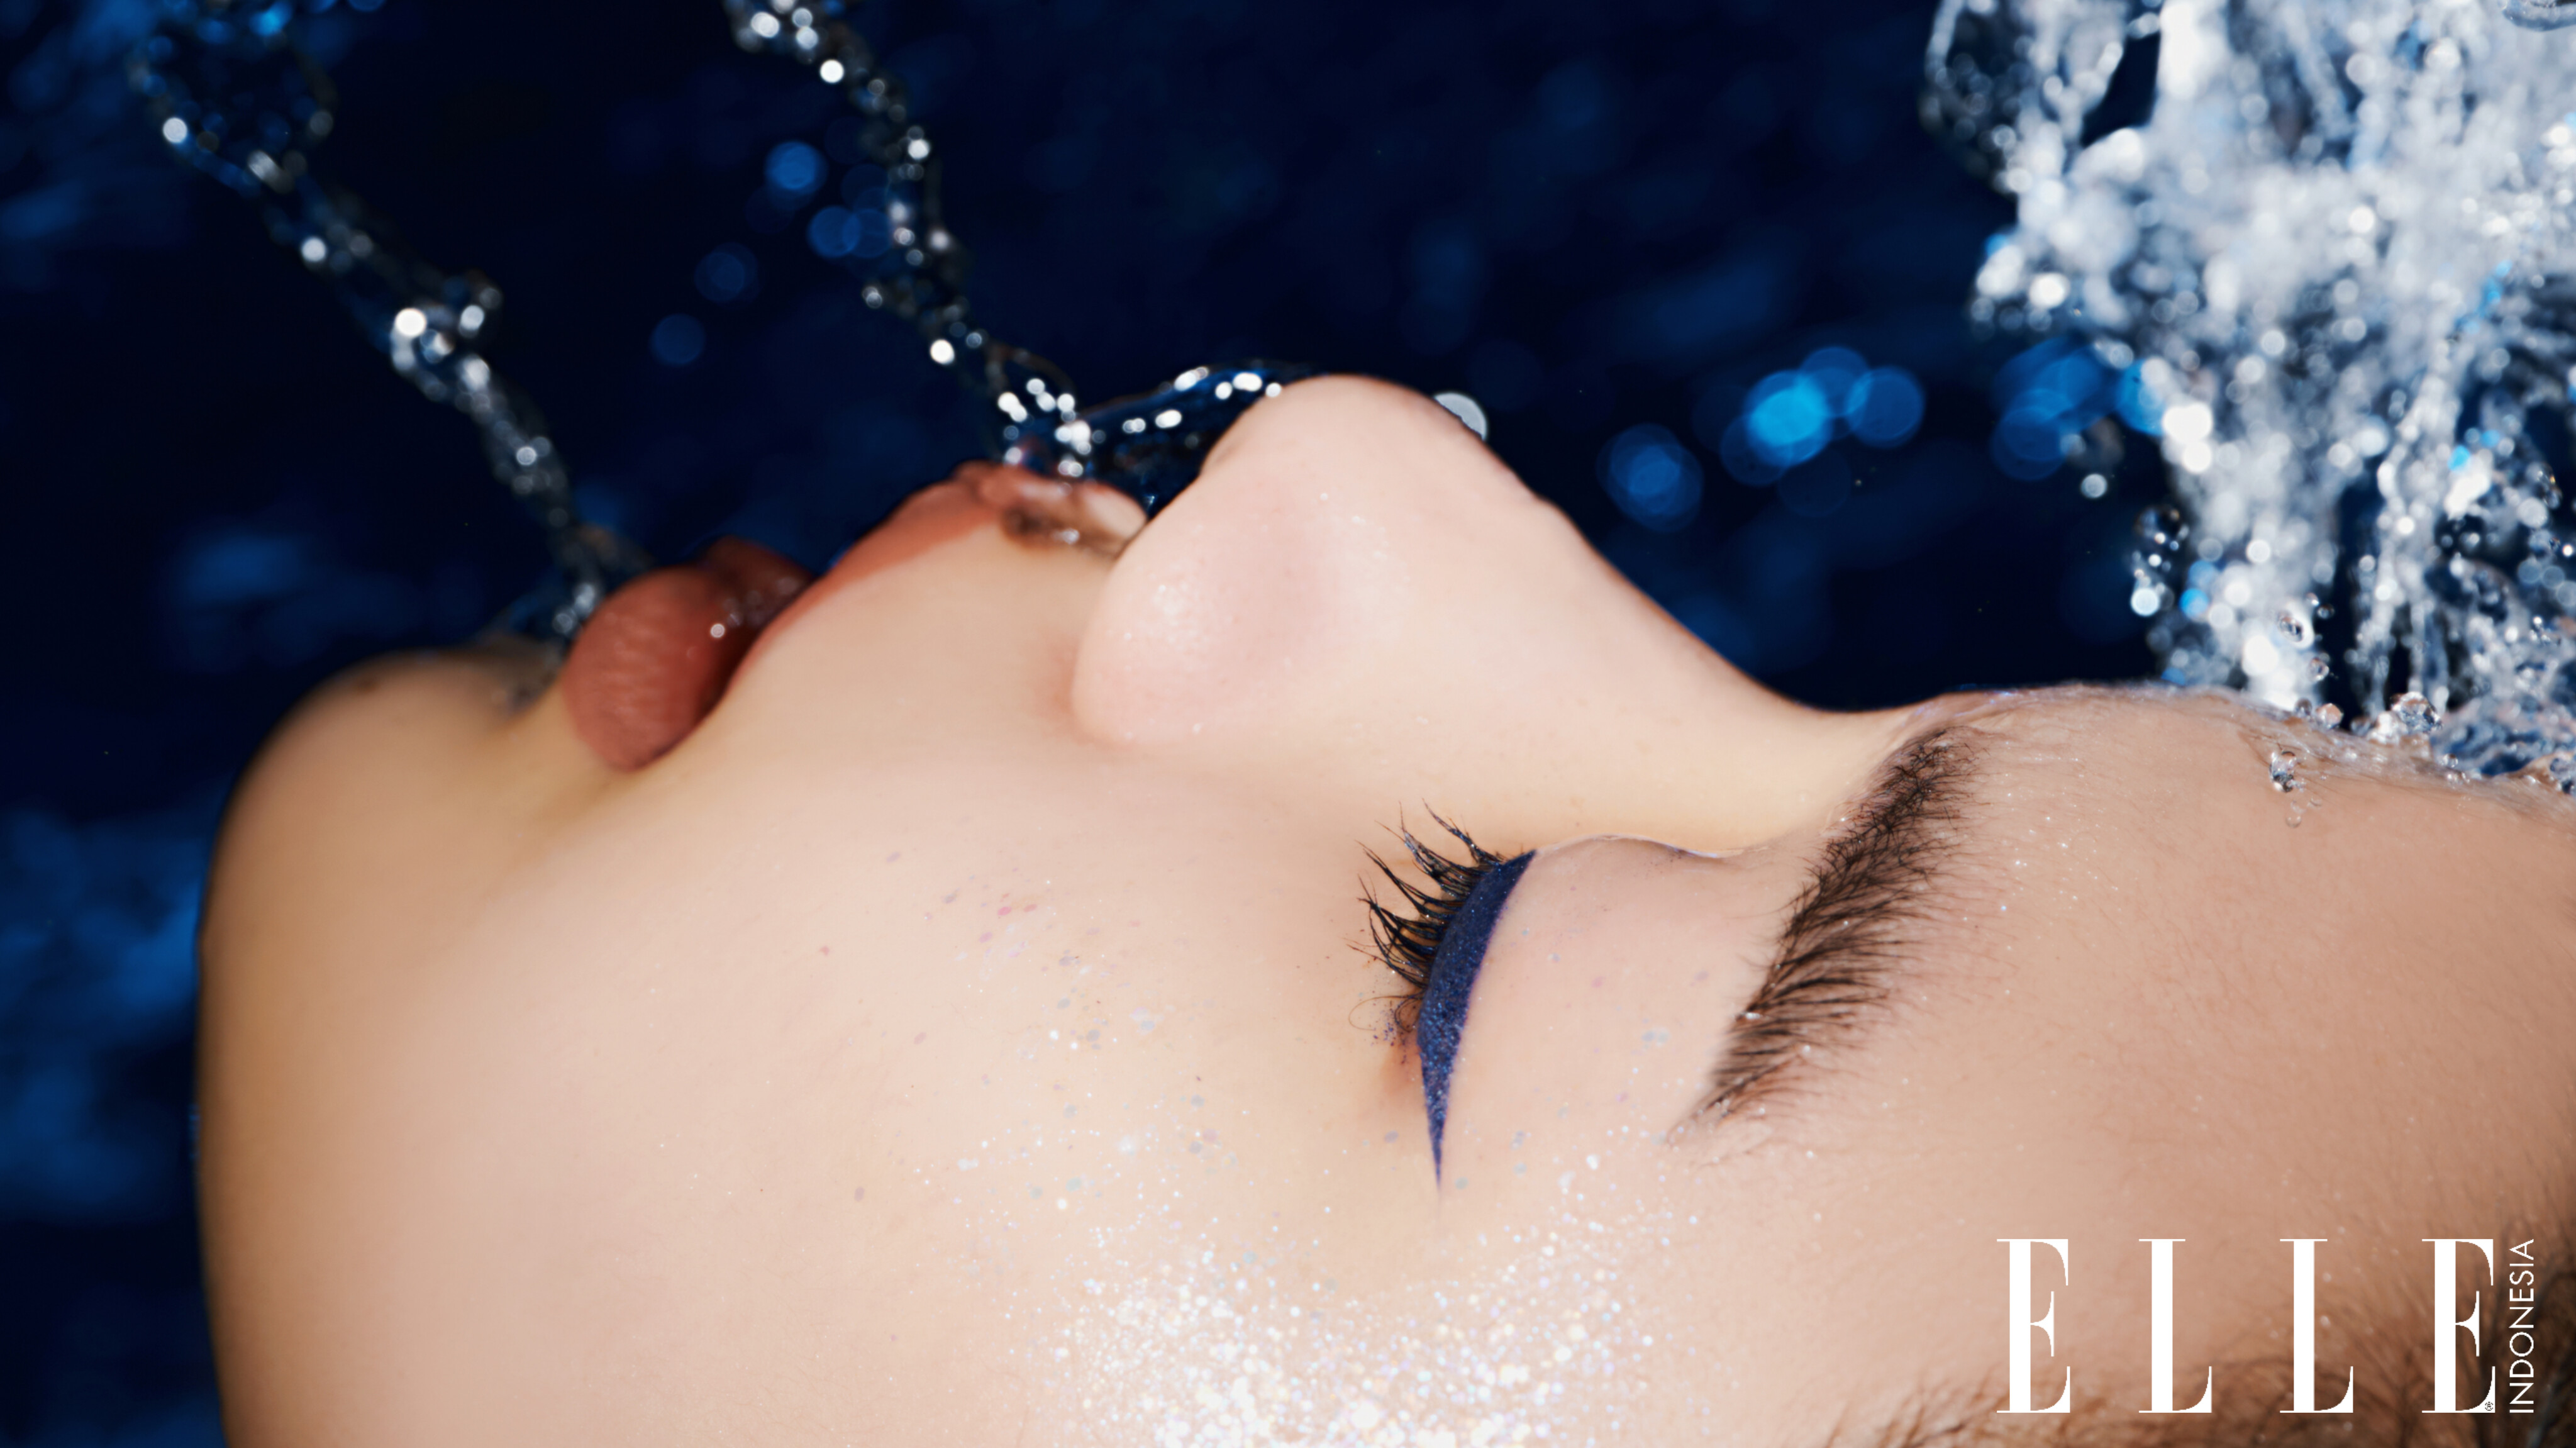 Coba Gaya Makeup Paling Atraktif Bulan Ini: Eyeliner Biru